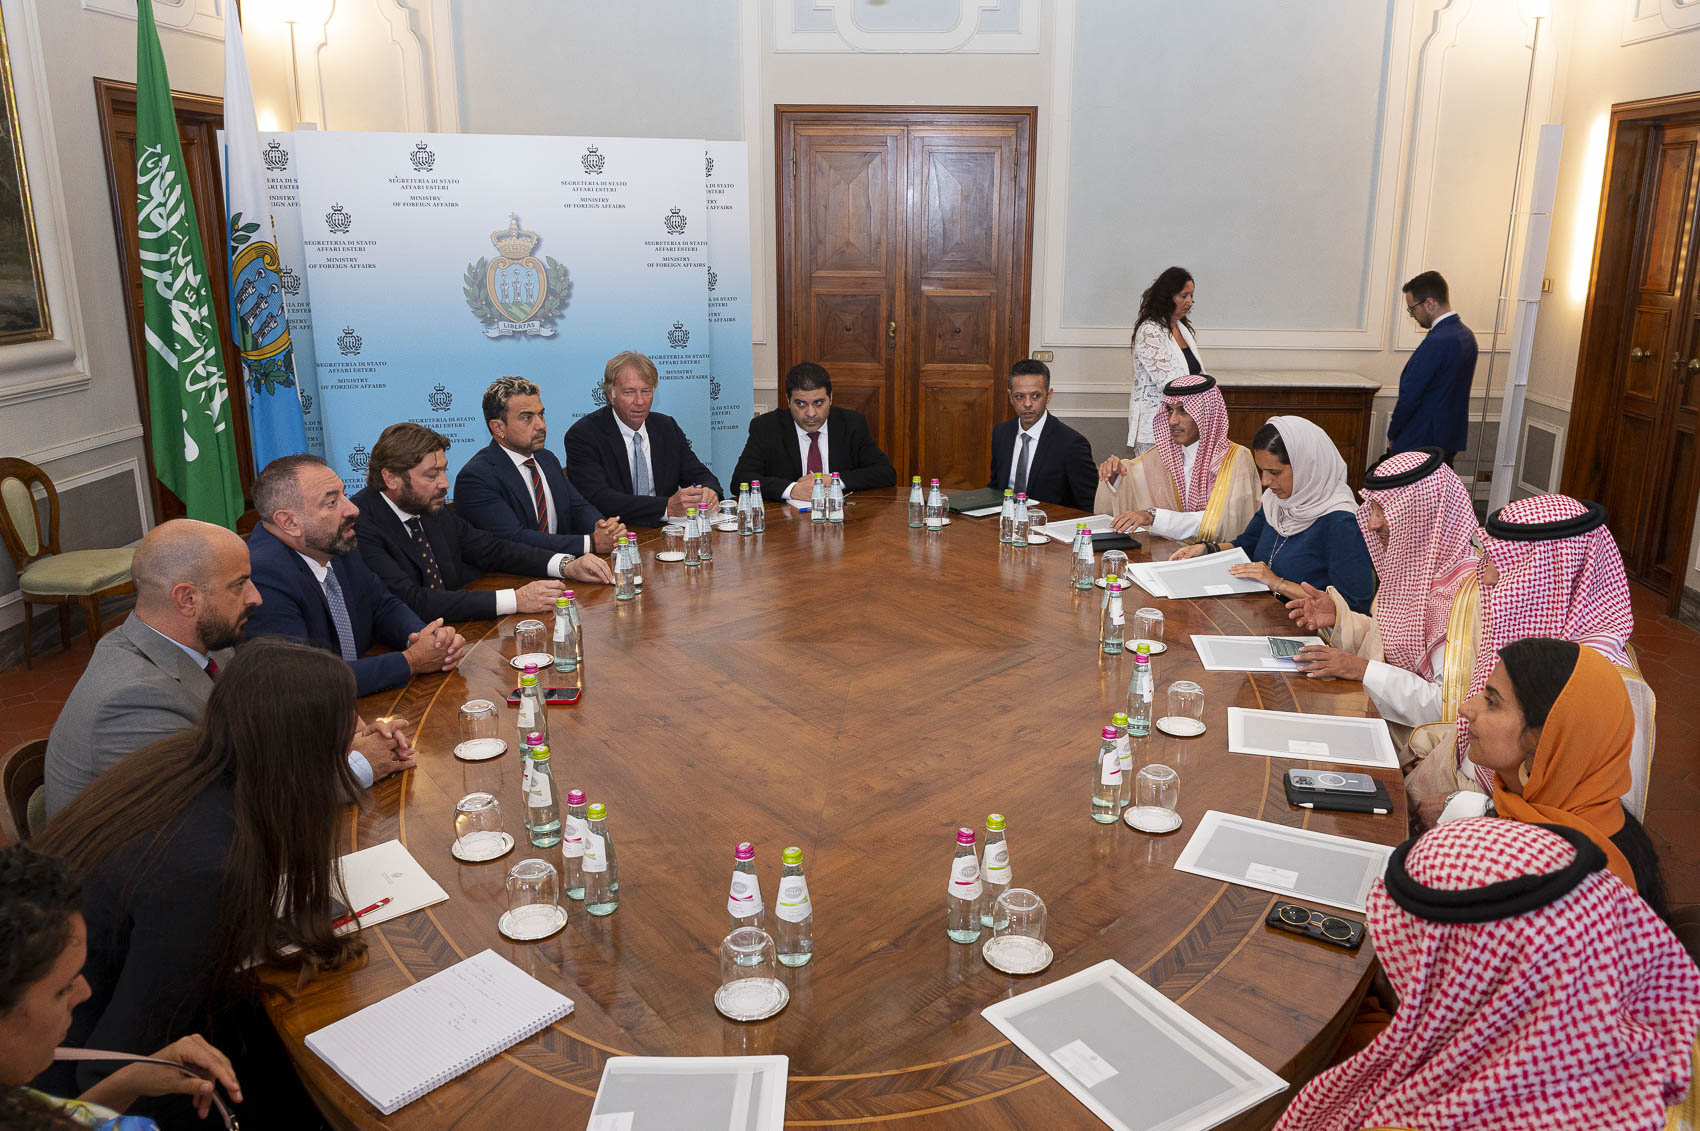 Finanziamento arabo per San Marino, i segretari di Stato Gatti e Pedini Amati: “Non si risolvono i problemi isolando i Paesi”